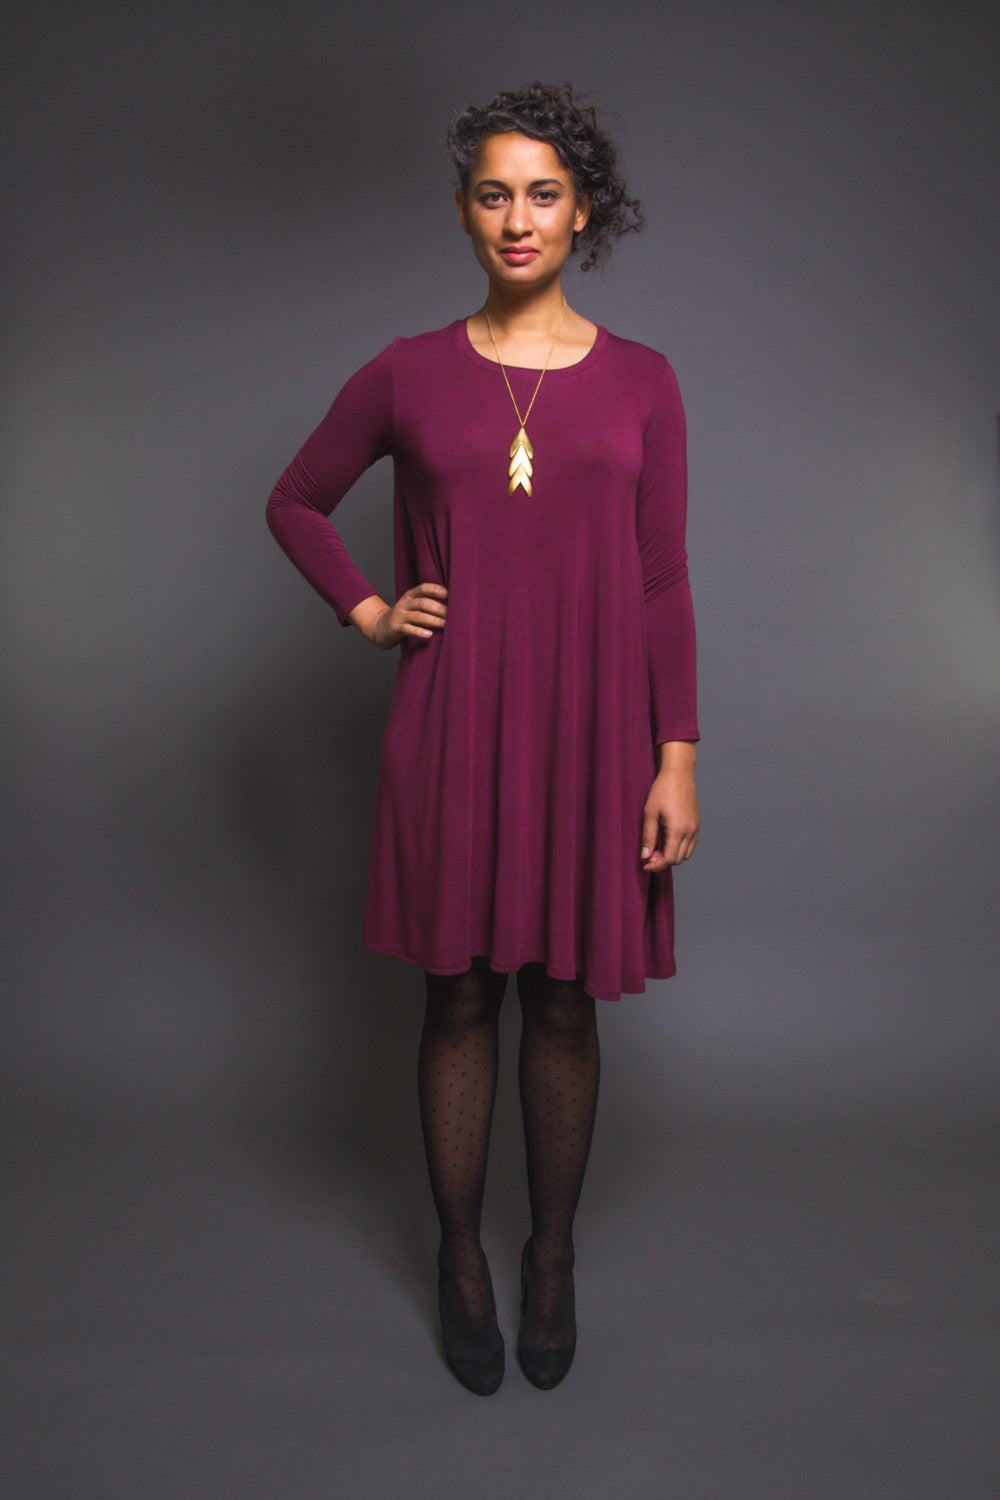 Ebony T-Shirt & Dress Pattern | Drapey t-shirt pattern – Closet Core ...